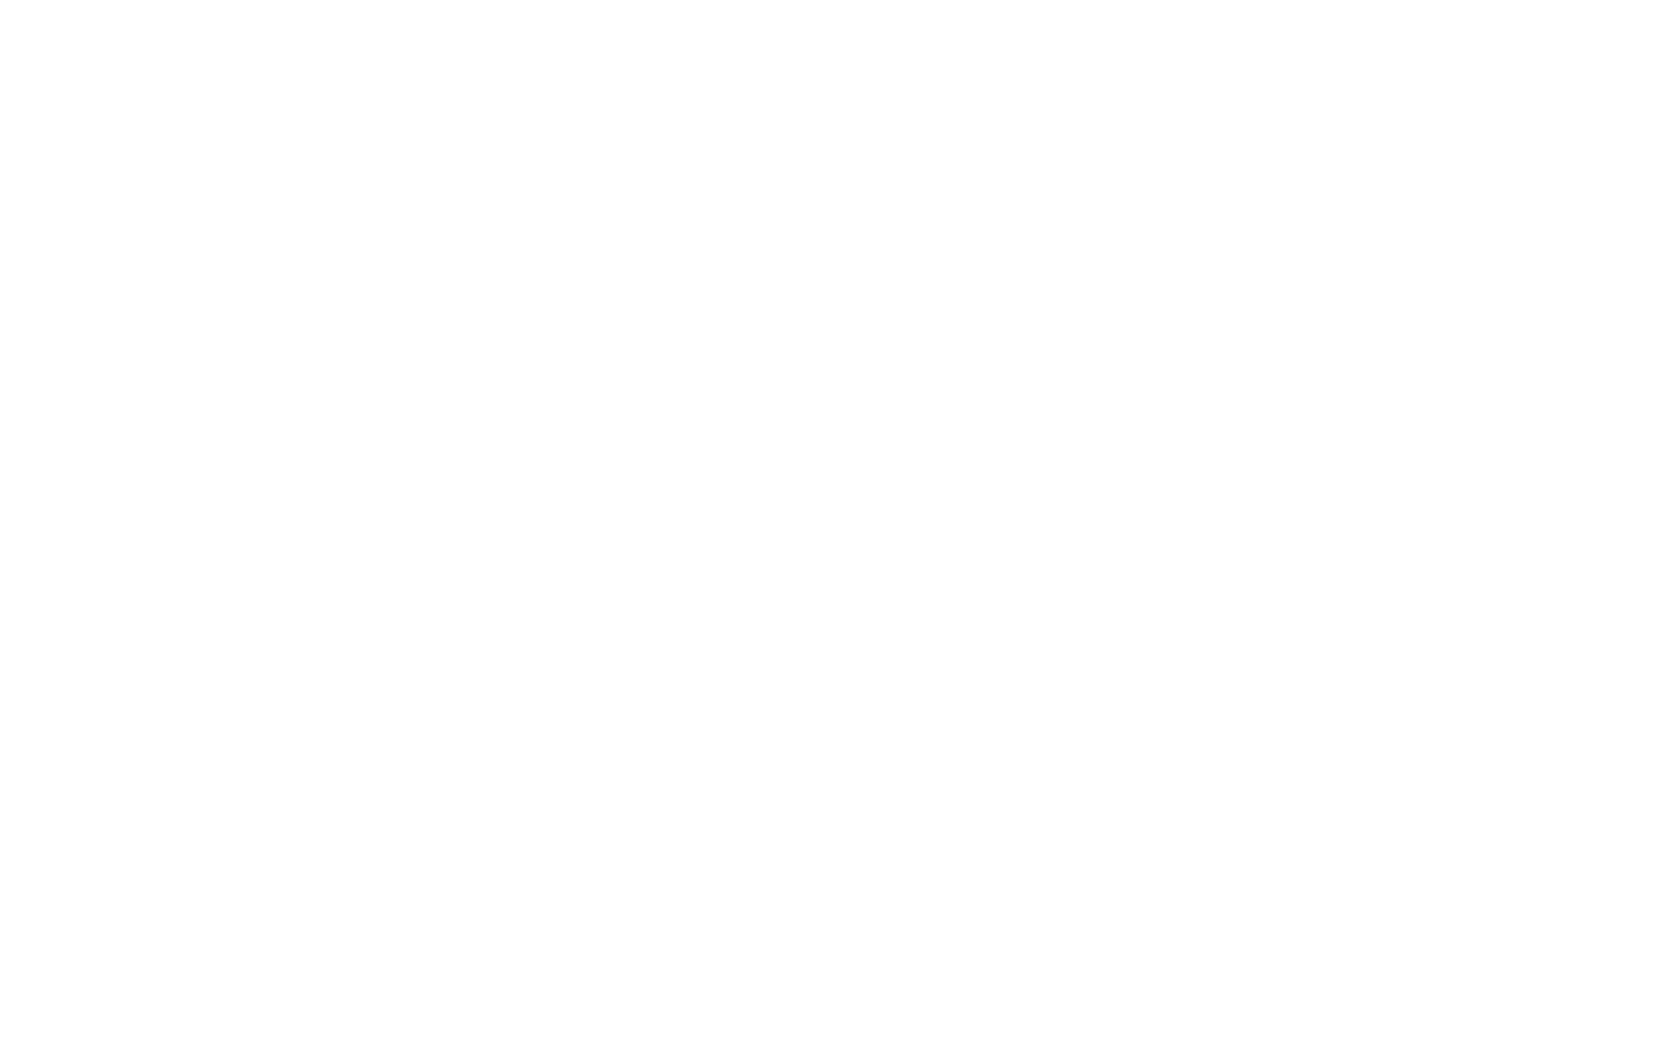 Торцевая заглушка Flexy TOREC LINE 30 для профилей Flexy: размер, вид, применение, способ монтажа в Москве, СПБ и России